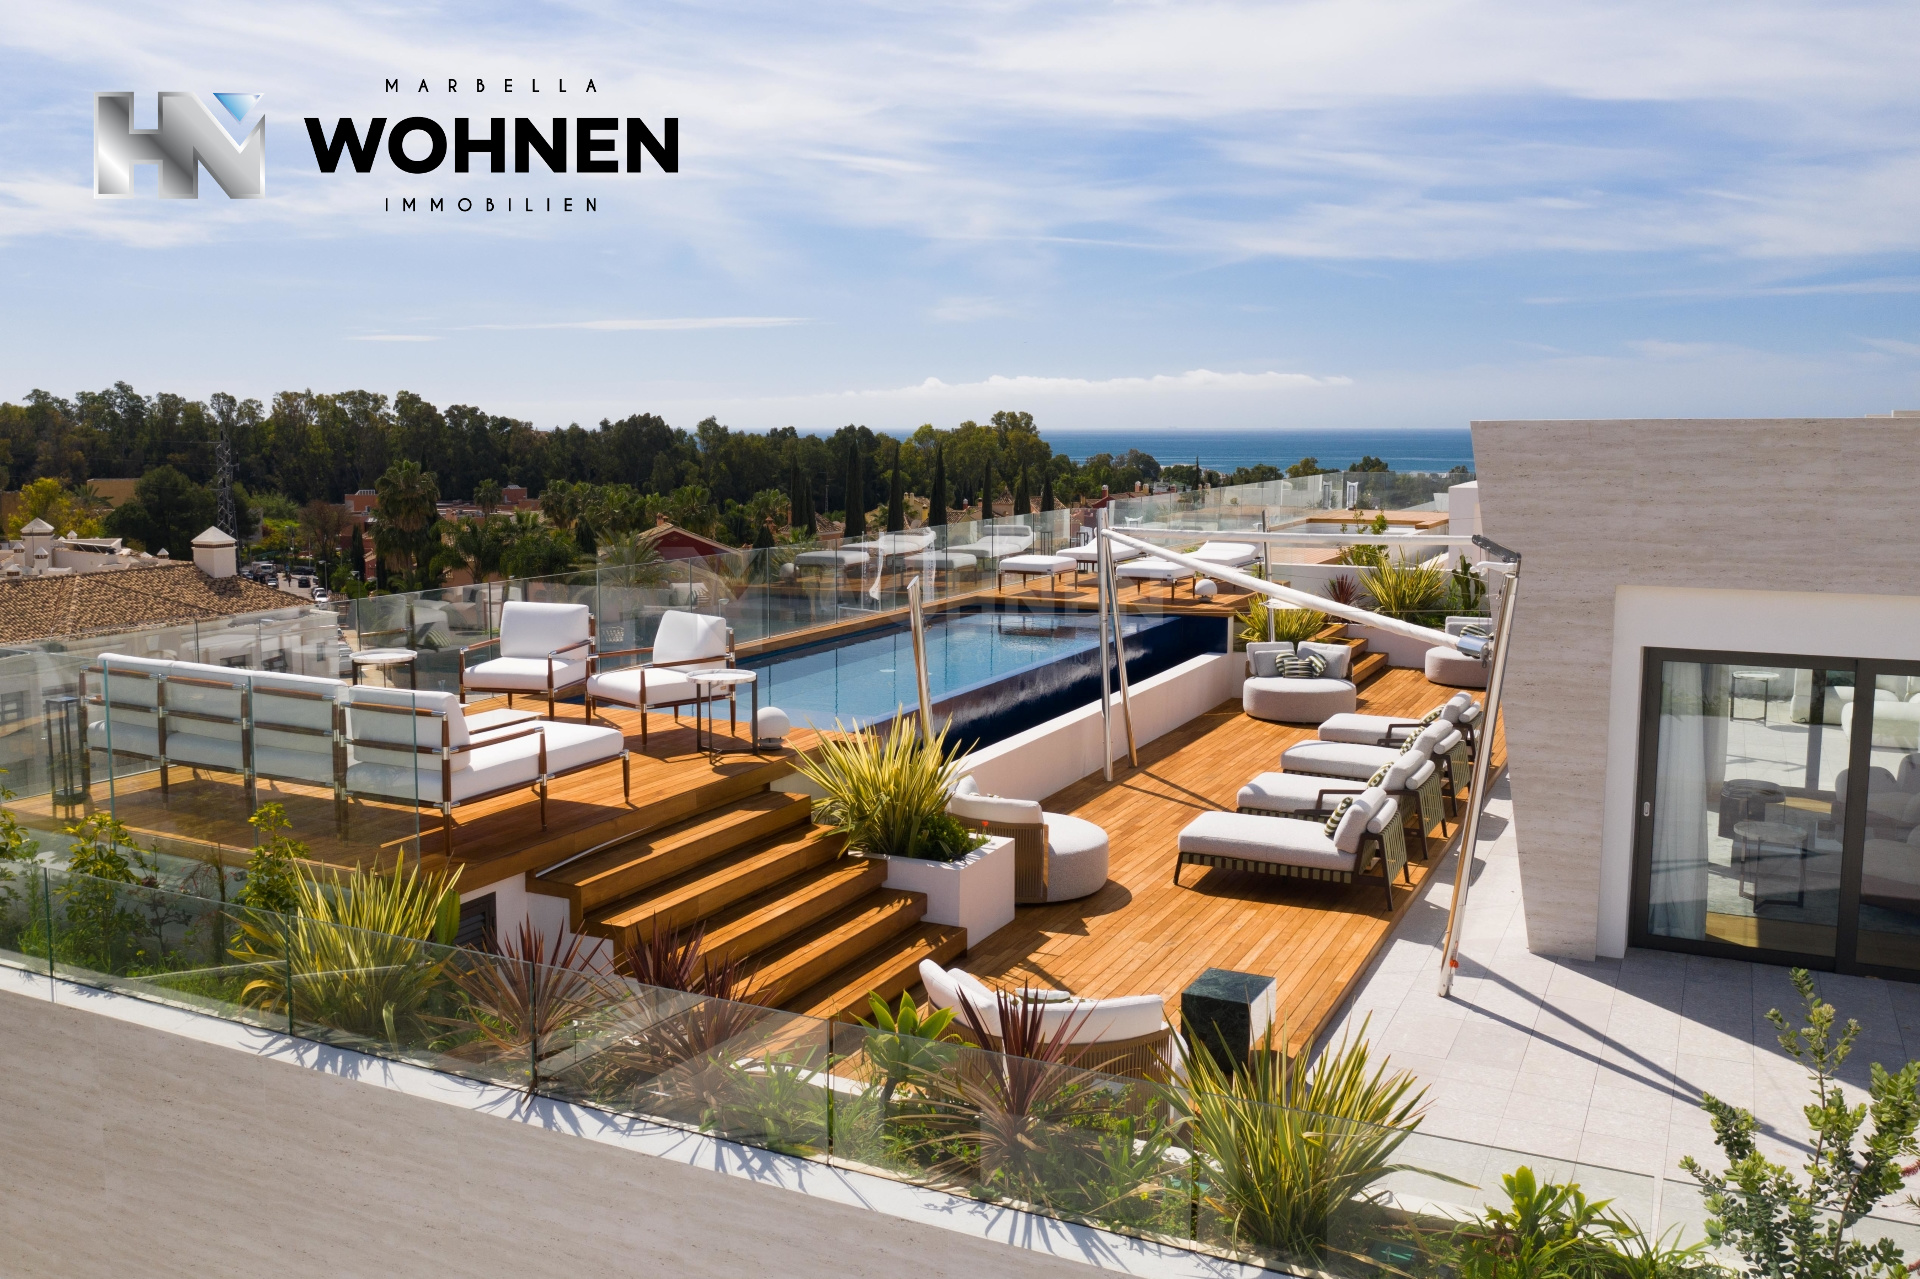 IMMOBILIEN – MARBELLA WOHNEN – Die besten Luxusimmobilien in Spanien befinden sich in Marbella